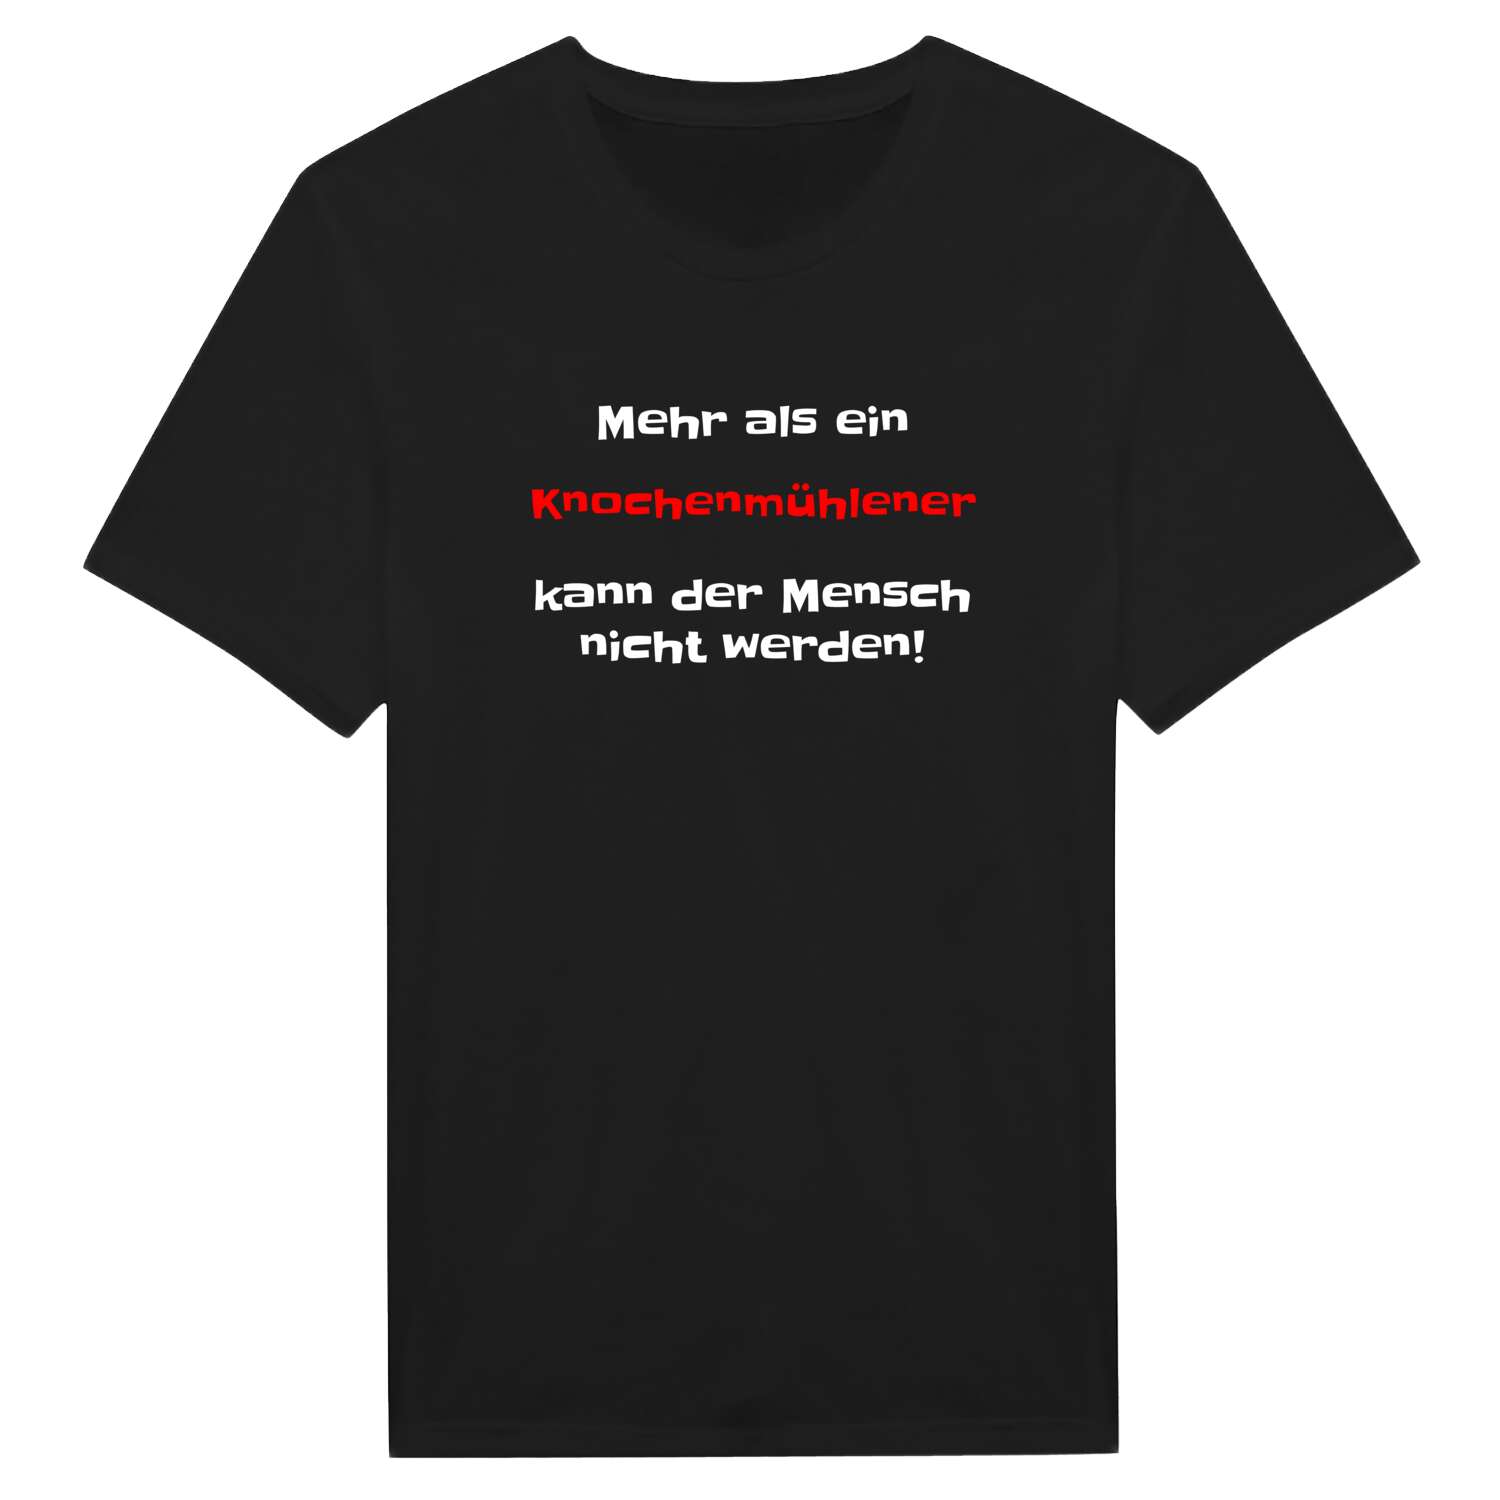 Knochenmühle T-Shirt »Mehr als ein«